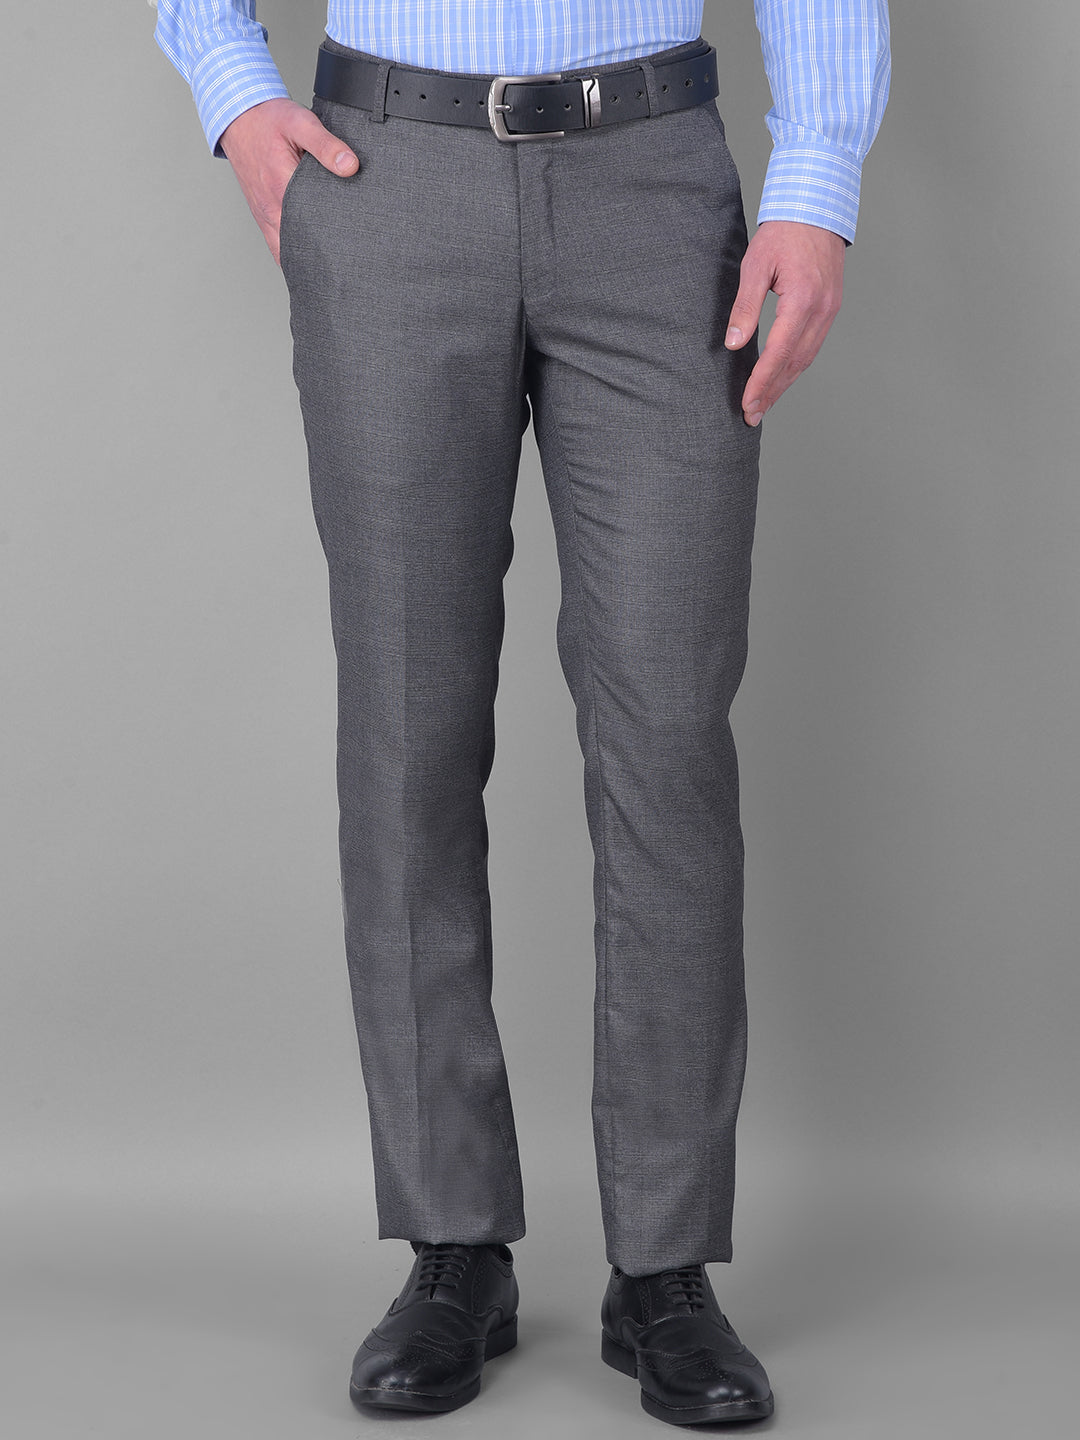 Grey Colour Formal Trousers for Men - Elite Trouser by Aristobrat